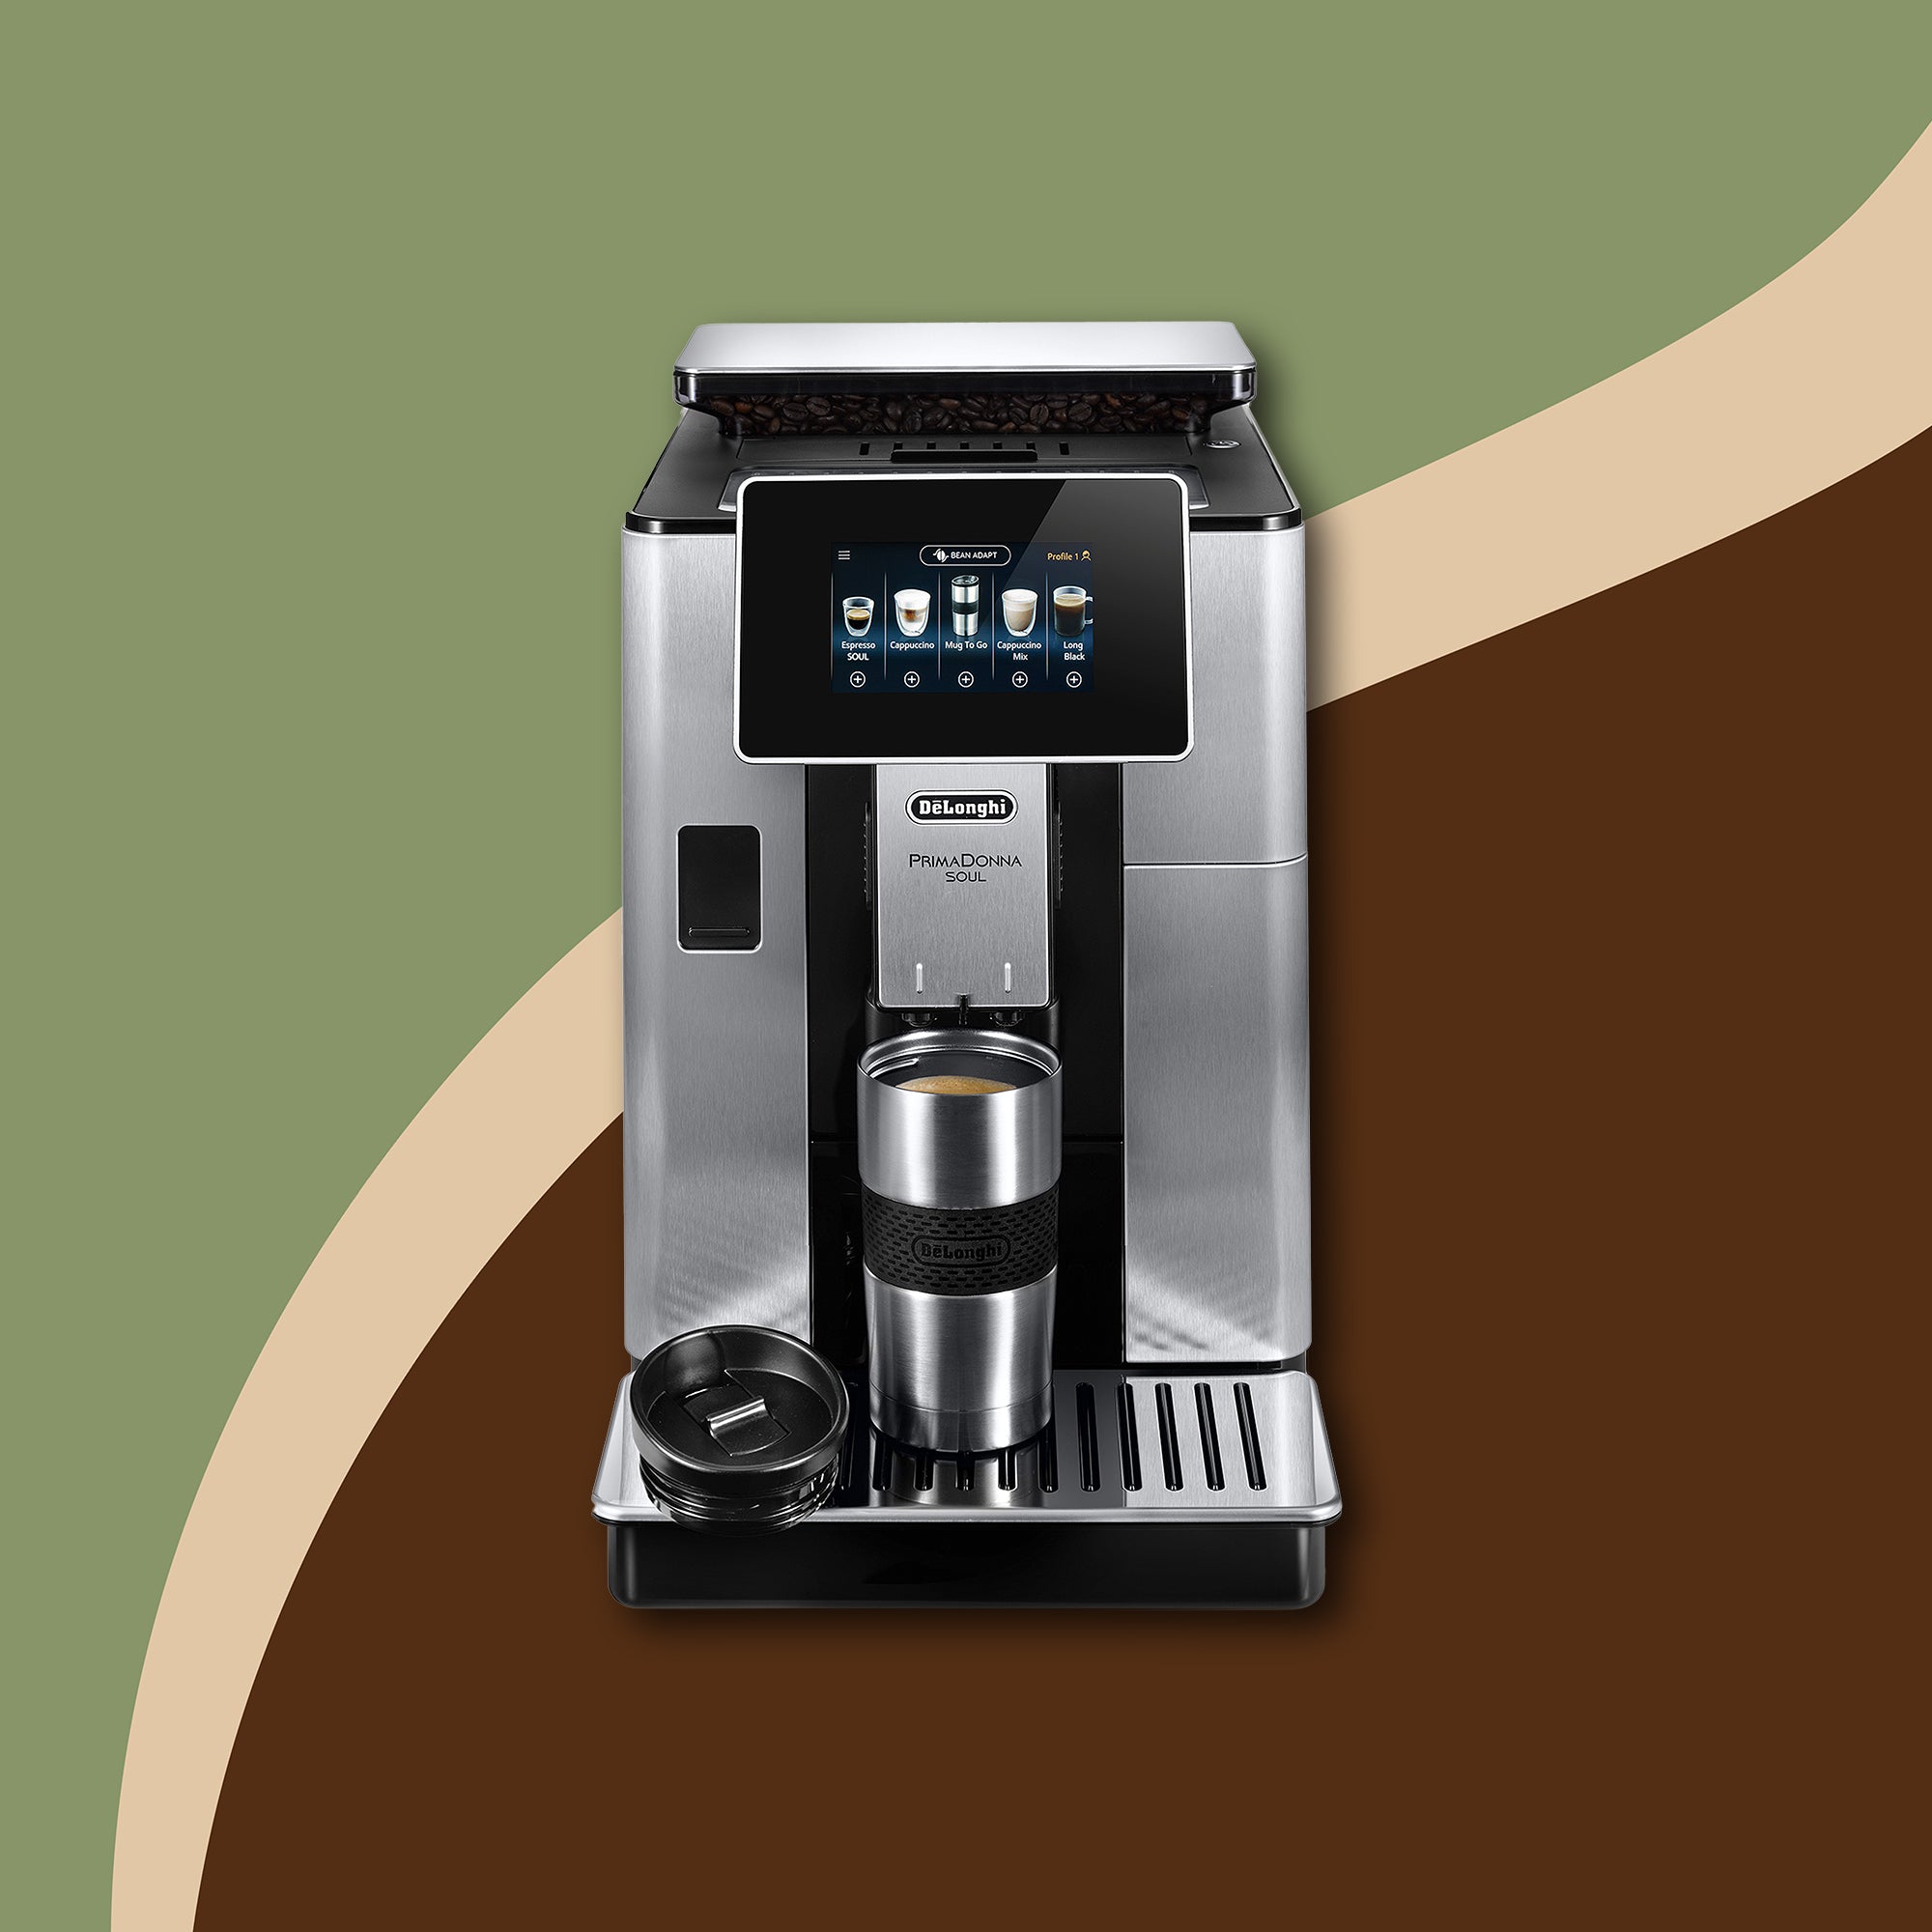 Cartouche filtrante Délonghi – Morgane café MHD - A changer